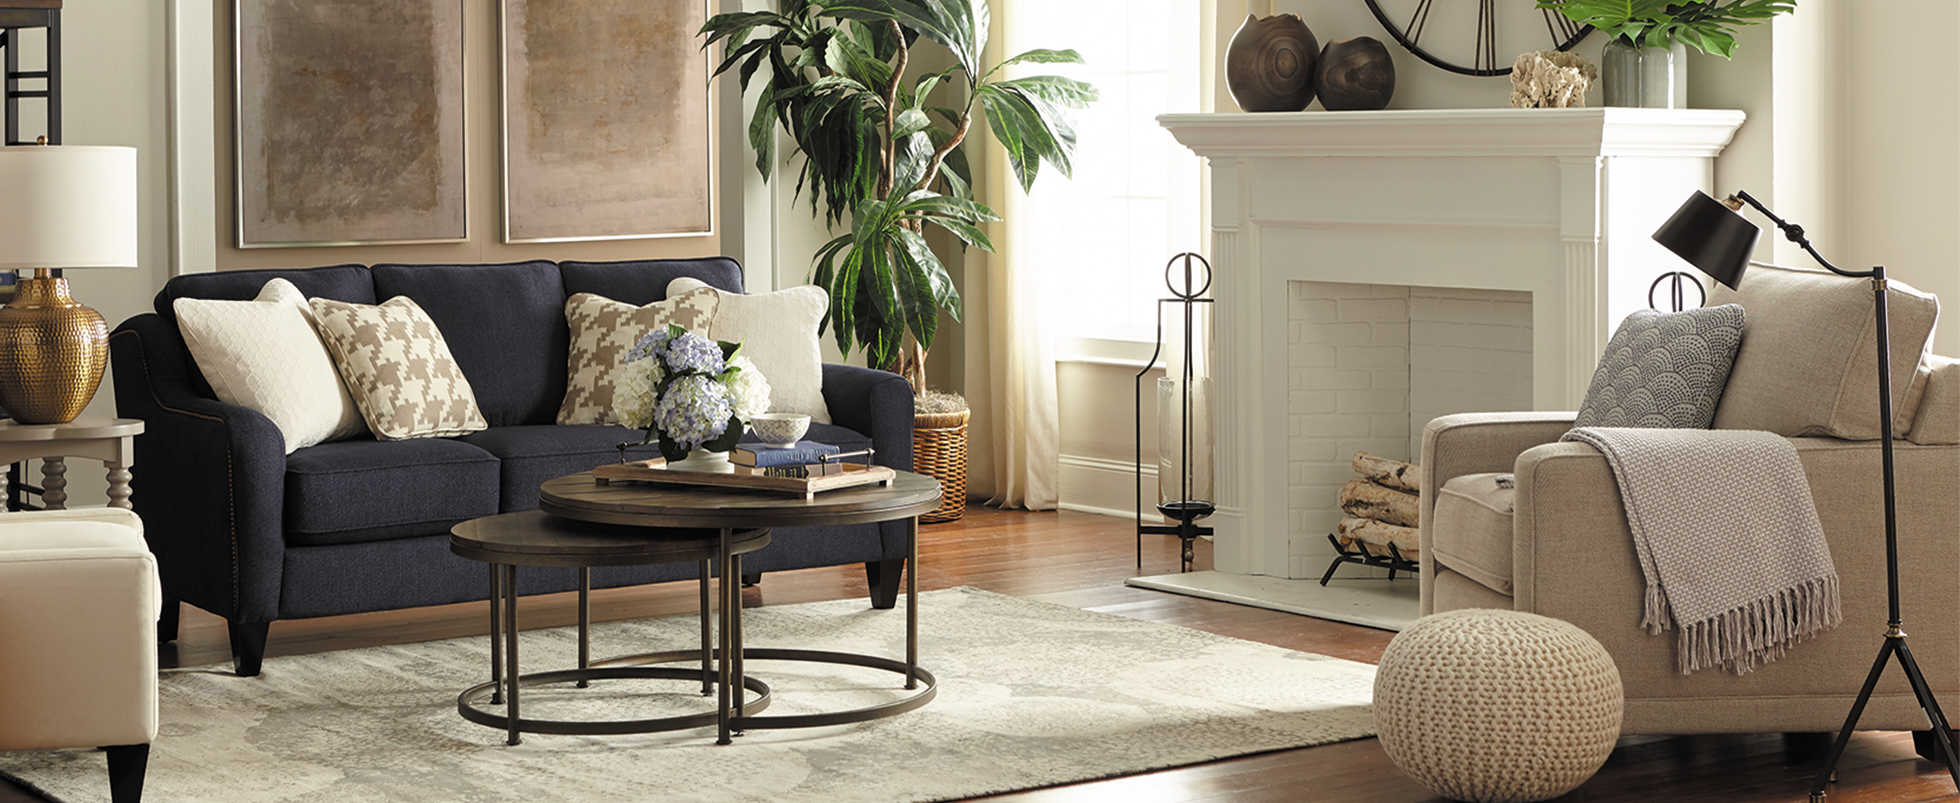 Design Inspirations La Z Boy, Lazy Boy Living Room Sets Leather